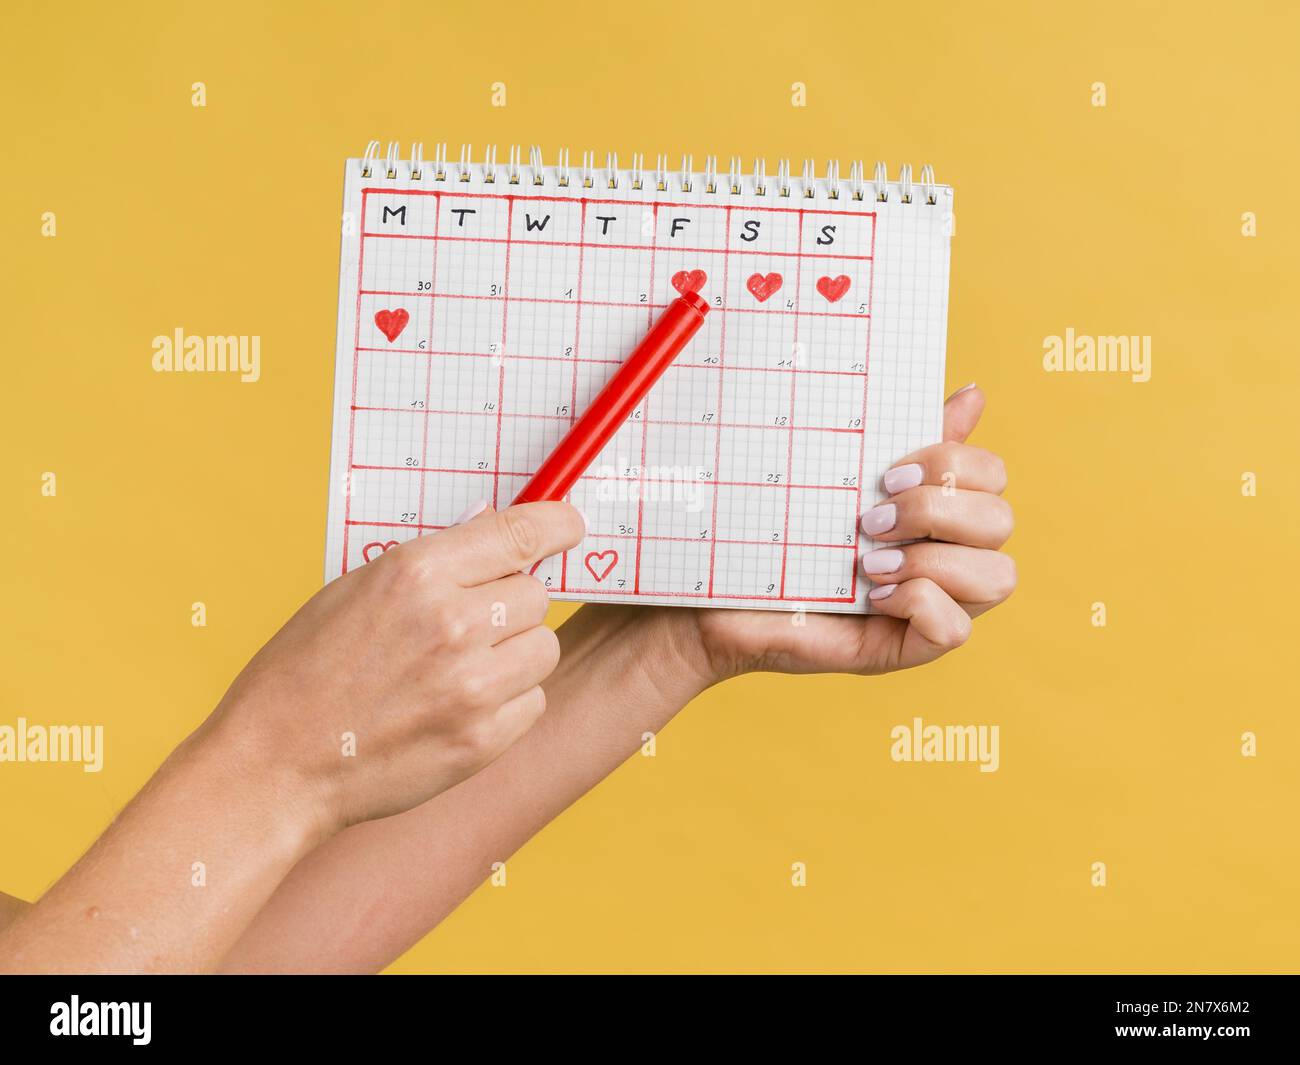 Hände halten roten Stift Kalender Vorderansicht Stockfoto